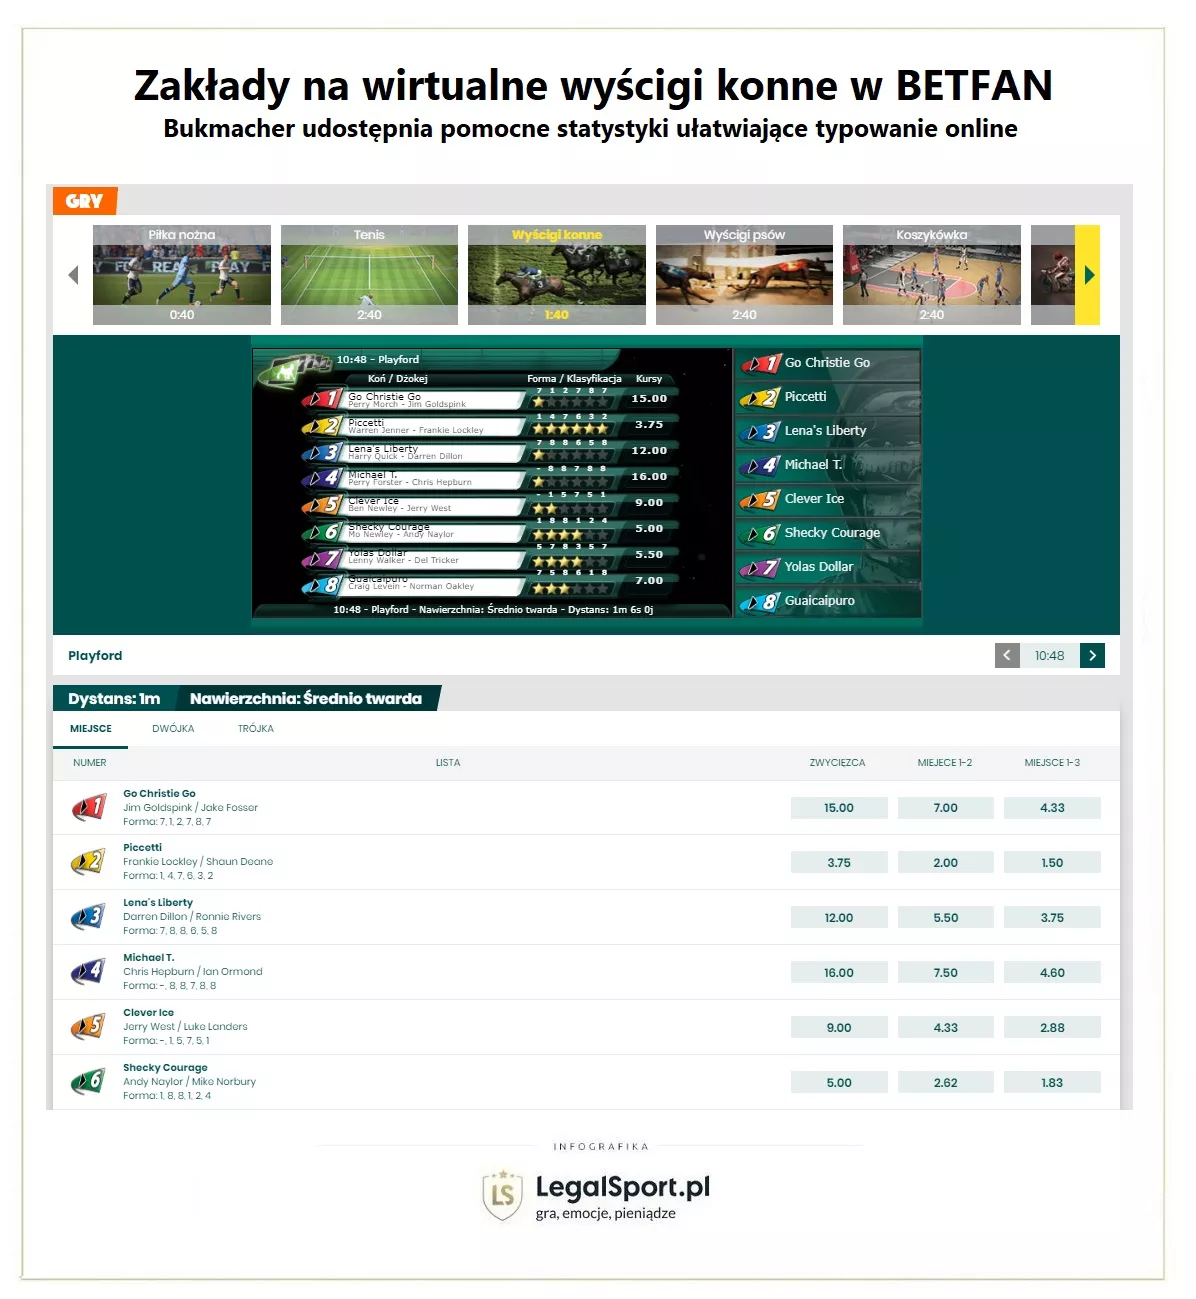 Wirtualne zakłady bukmacherskie na wyścigi konne w BETFAN Polska